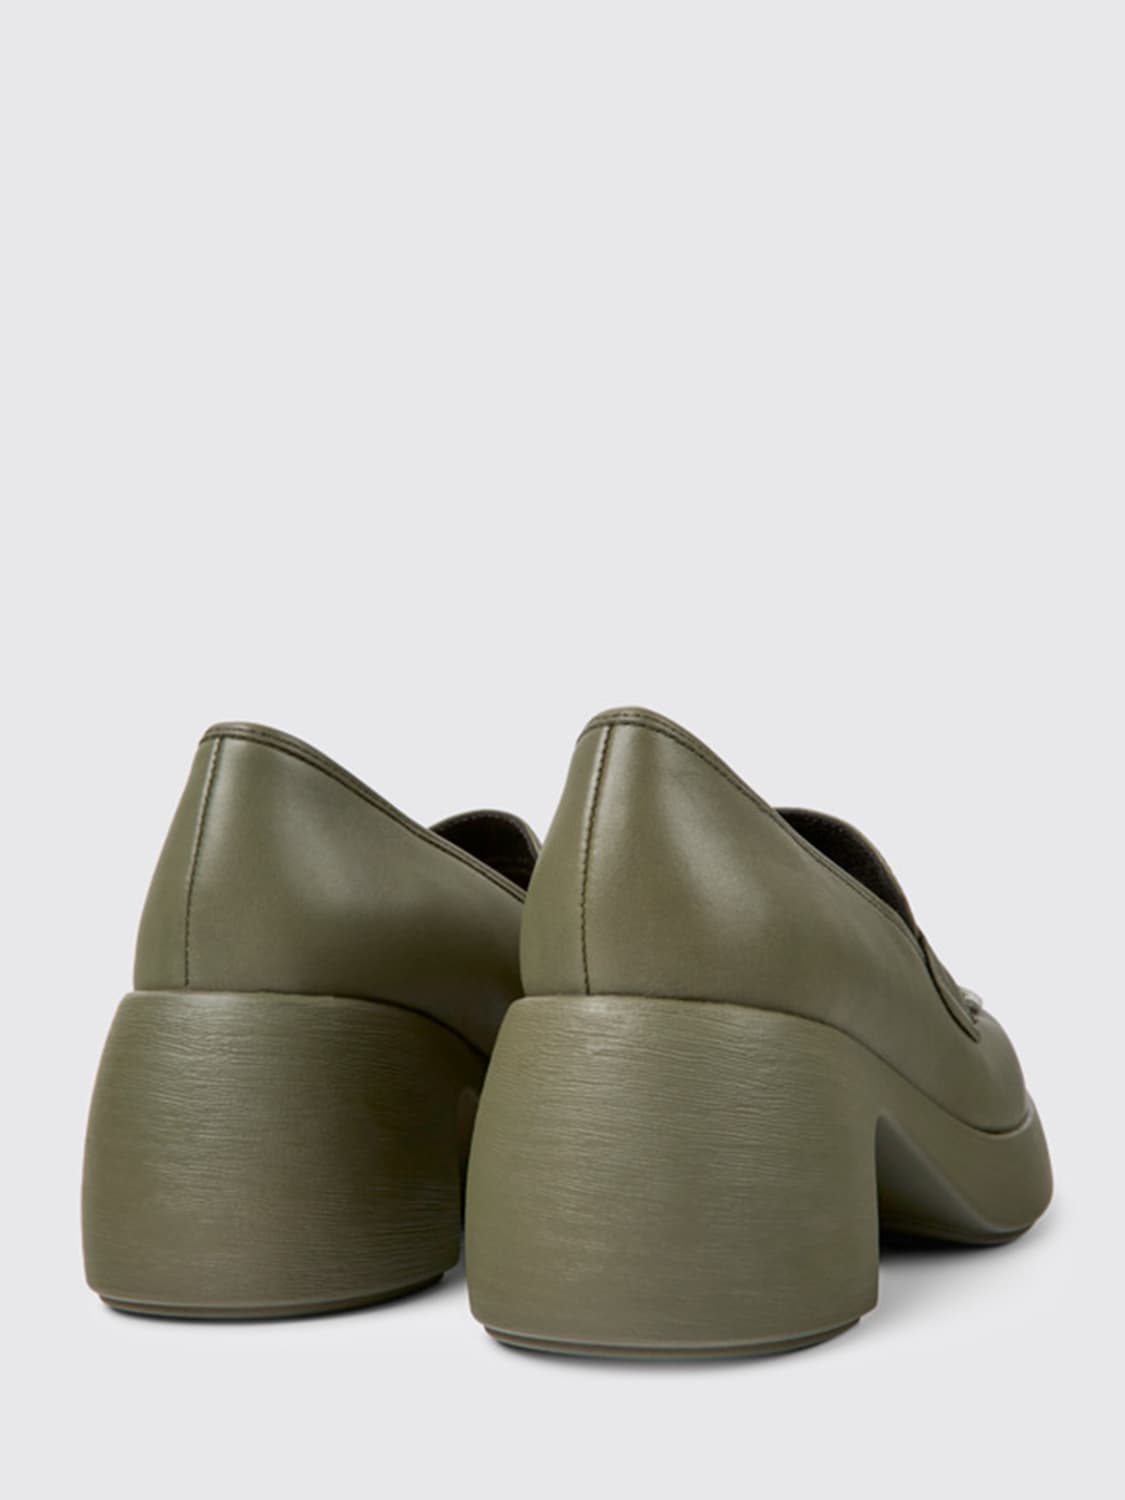 Outlet de Camper: Zapatos planos para mujer, Verde  Zapatos Planos Camper  20889-131 WABI en línea en